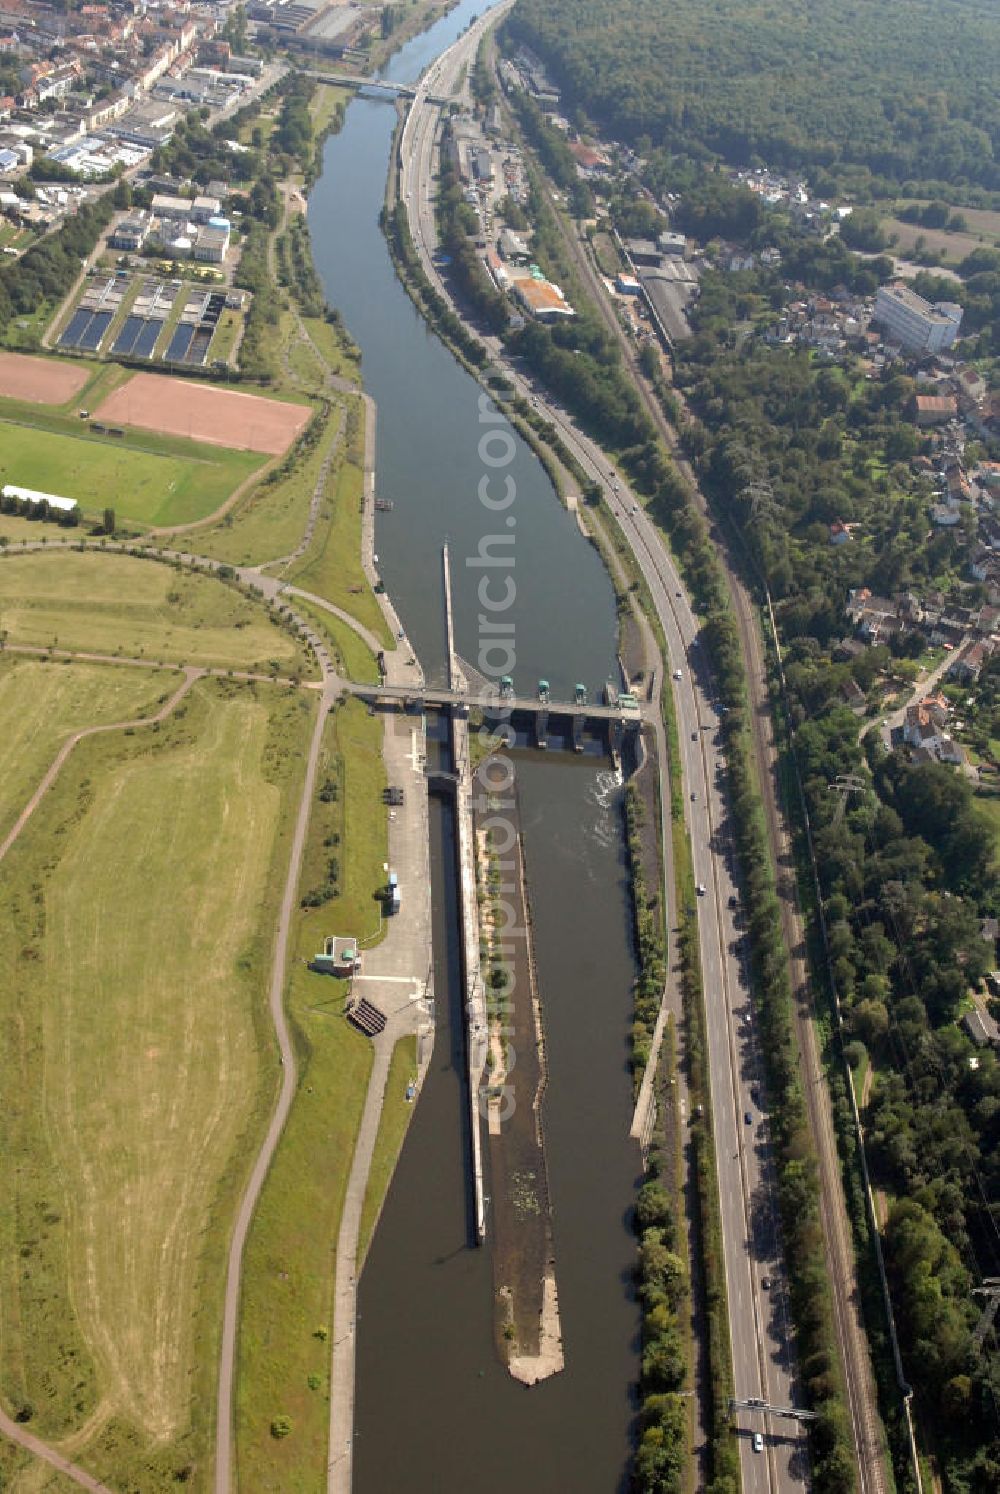 Aerial image Saarbrücken - Blick aus Westen entlang der Saar mit der Schleuse Luisenthal in Saarbrücken-Burbach im Saarland. Am linken Saarufer erstreckt sich die Autobahn 620. Am rechten Ufer erstreckt sich die Kläranlage Burbach des Entsorgungsverband Saar an der Mettlacher Straße. View from northwest along the Saar river.